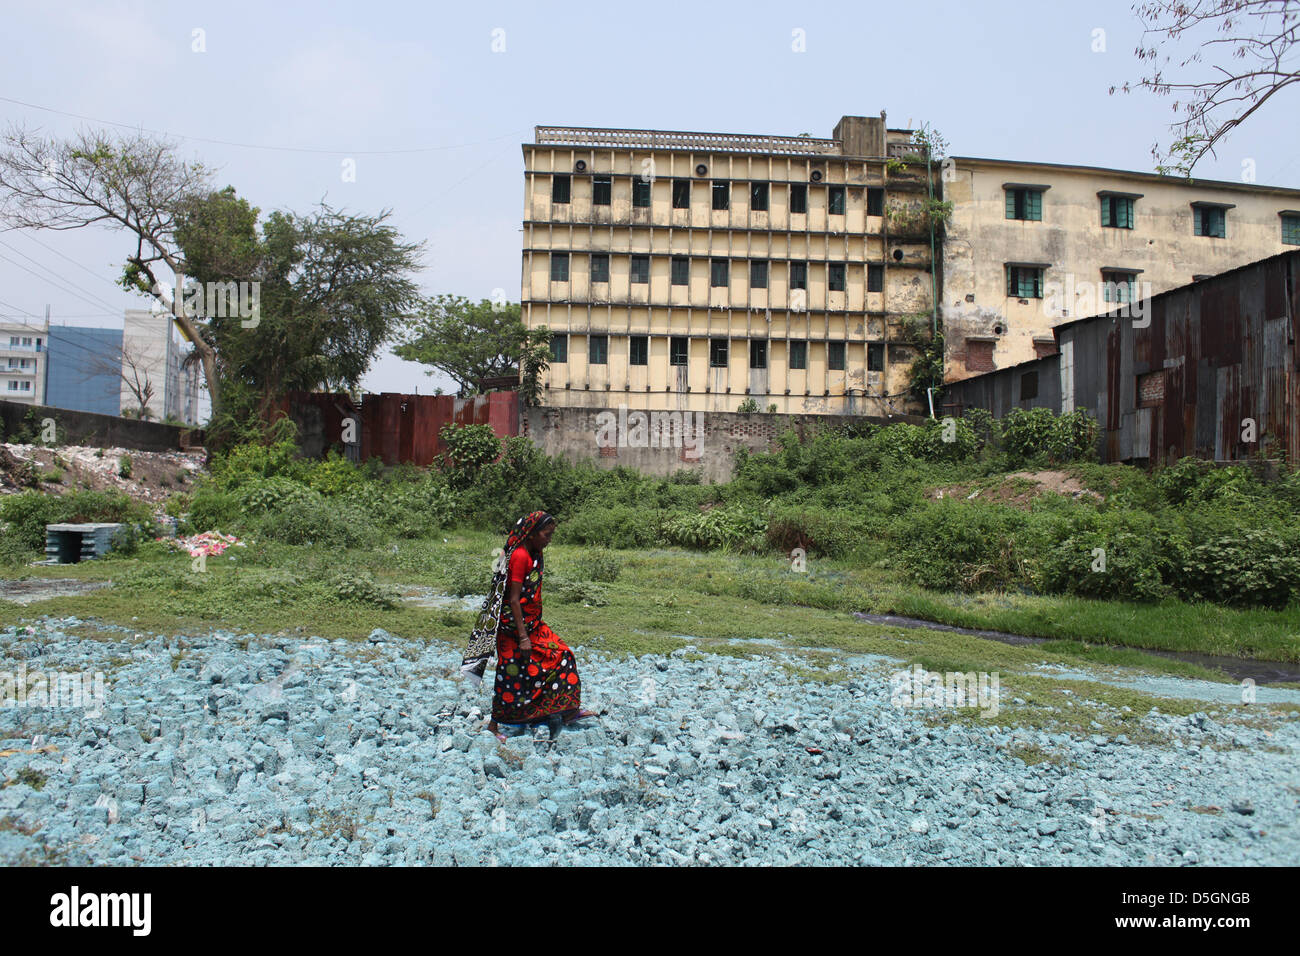 Dhaka, Bangladesch. 2. April 2013. Mühlen und Fabriken werfen Abfallstoffe in Seen und Flüssen in Dhaka machen einen dunkleren Ausblick für die ökologische Zukunft der Region. Ein großer Faktor in der Region sind die Textilfabriken.  Bekleidungs-Industrie mit seiner rückwärts Gestänge Sektoren zusammengesetzte Textilfabriken einschließlich sterben, Druck und Weiterverarbeitung Einheiten), und Leder Recheneinheiten (unter KMU) verwenden Sie erhebliche Mengen an hochgiftigen Abfällen, Farbstoffe und Chemikalien. Bildnachweis: Zakir Hossain Chowdhury Zakir / Alamy Live News Stockfoto